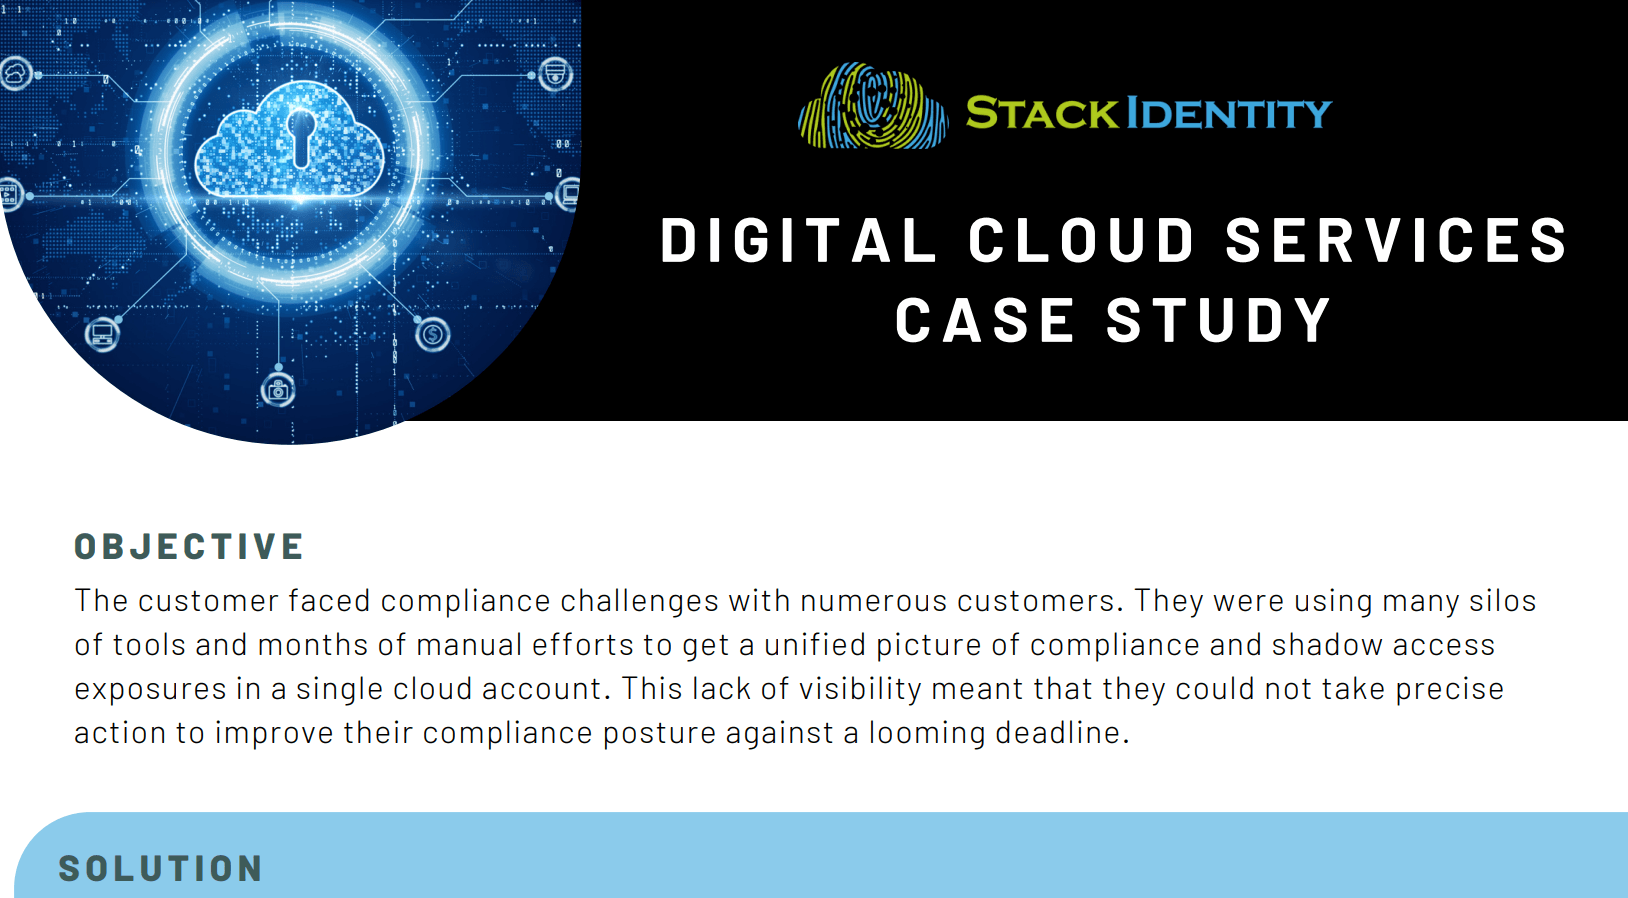 Digital Cloud Services